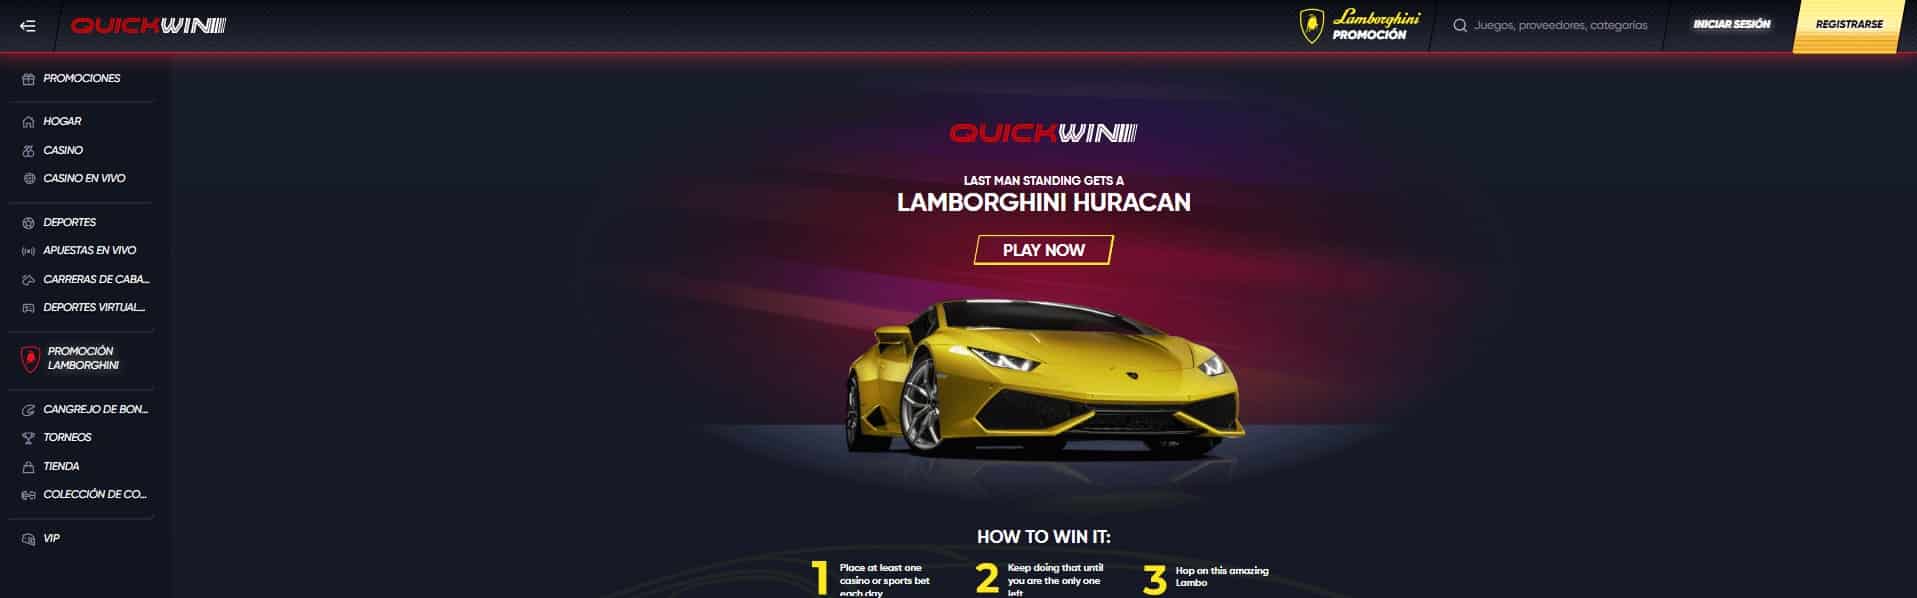 QuickWin casino pagina